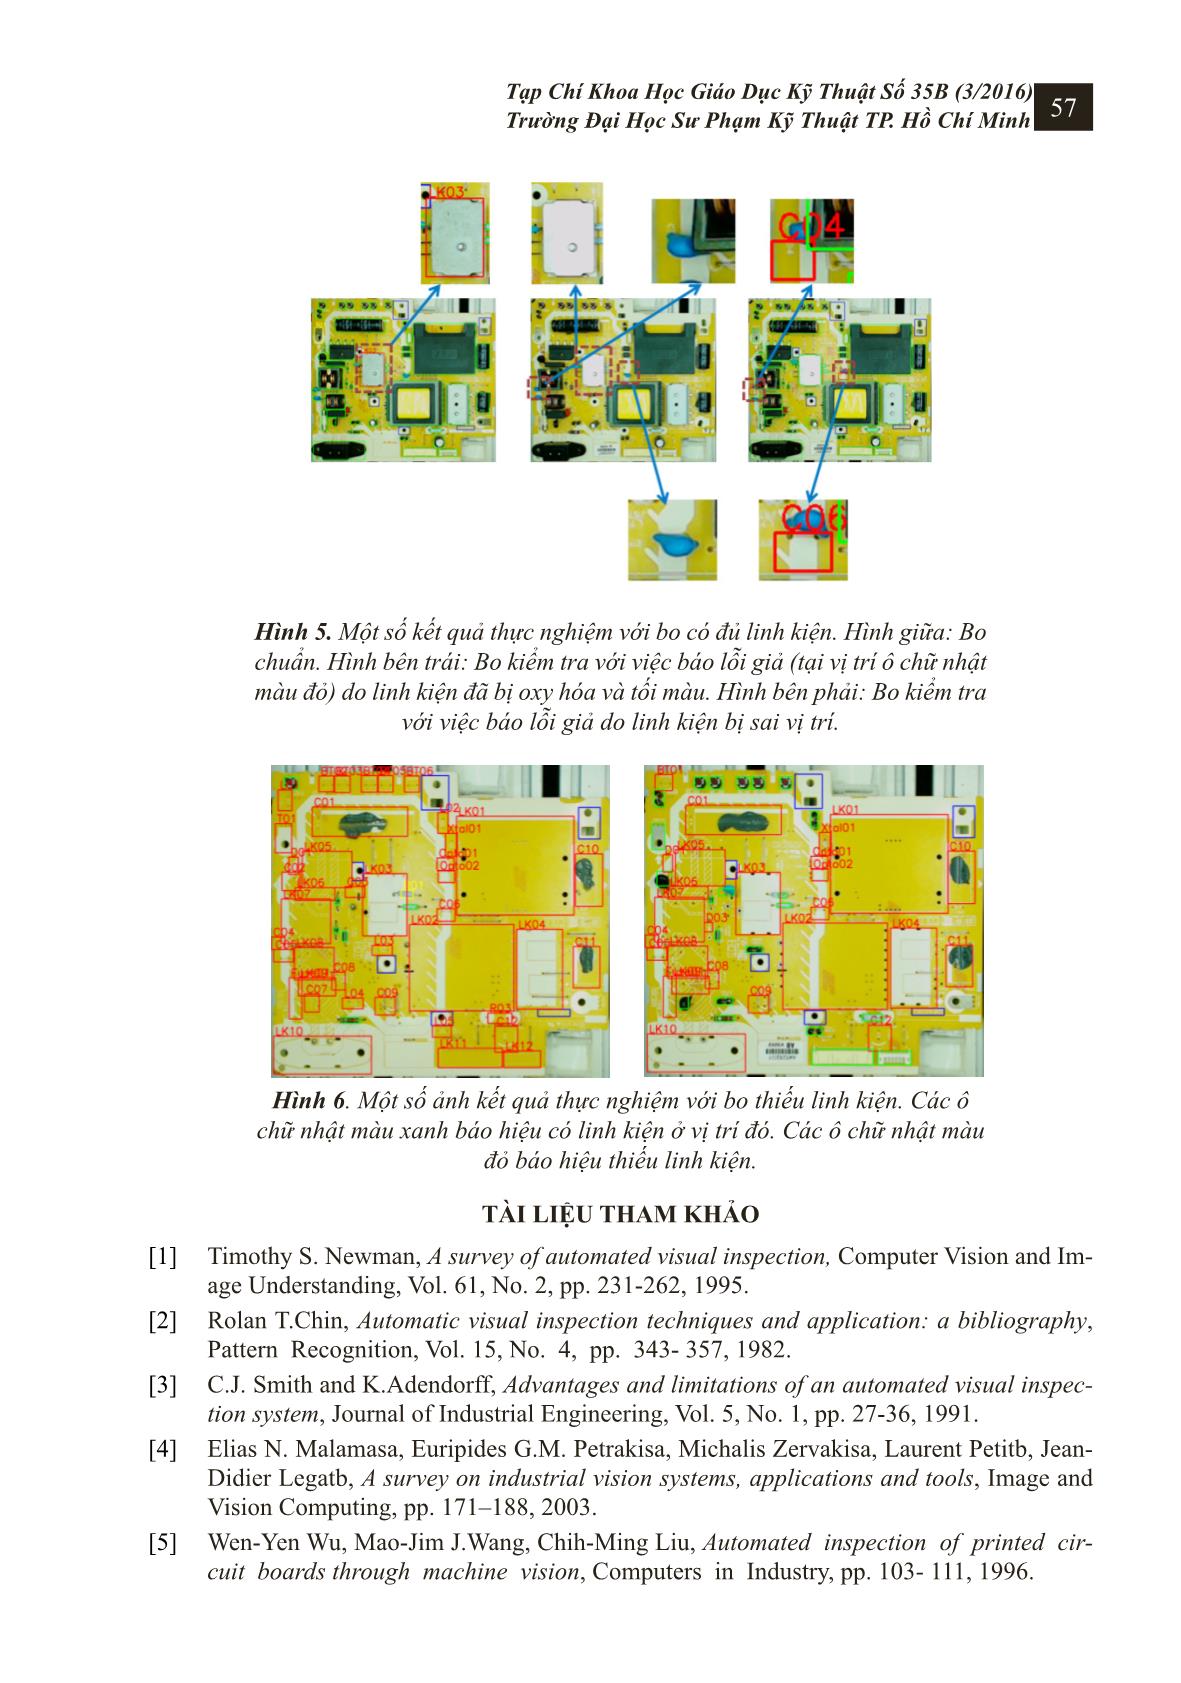 Hệ thống kiểm tra linh kiện trên bo mạch điện tử sử dụng công nghệ xử lý ảnh trang 6